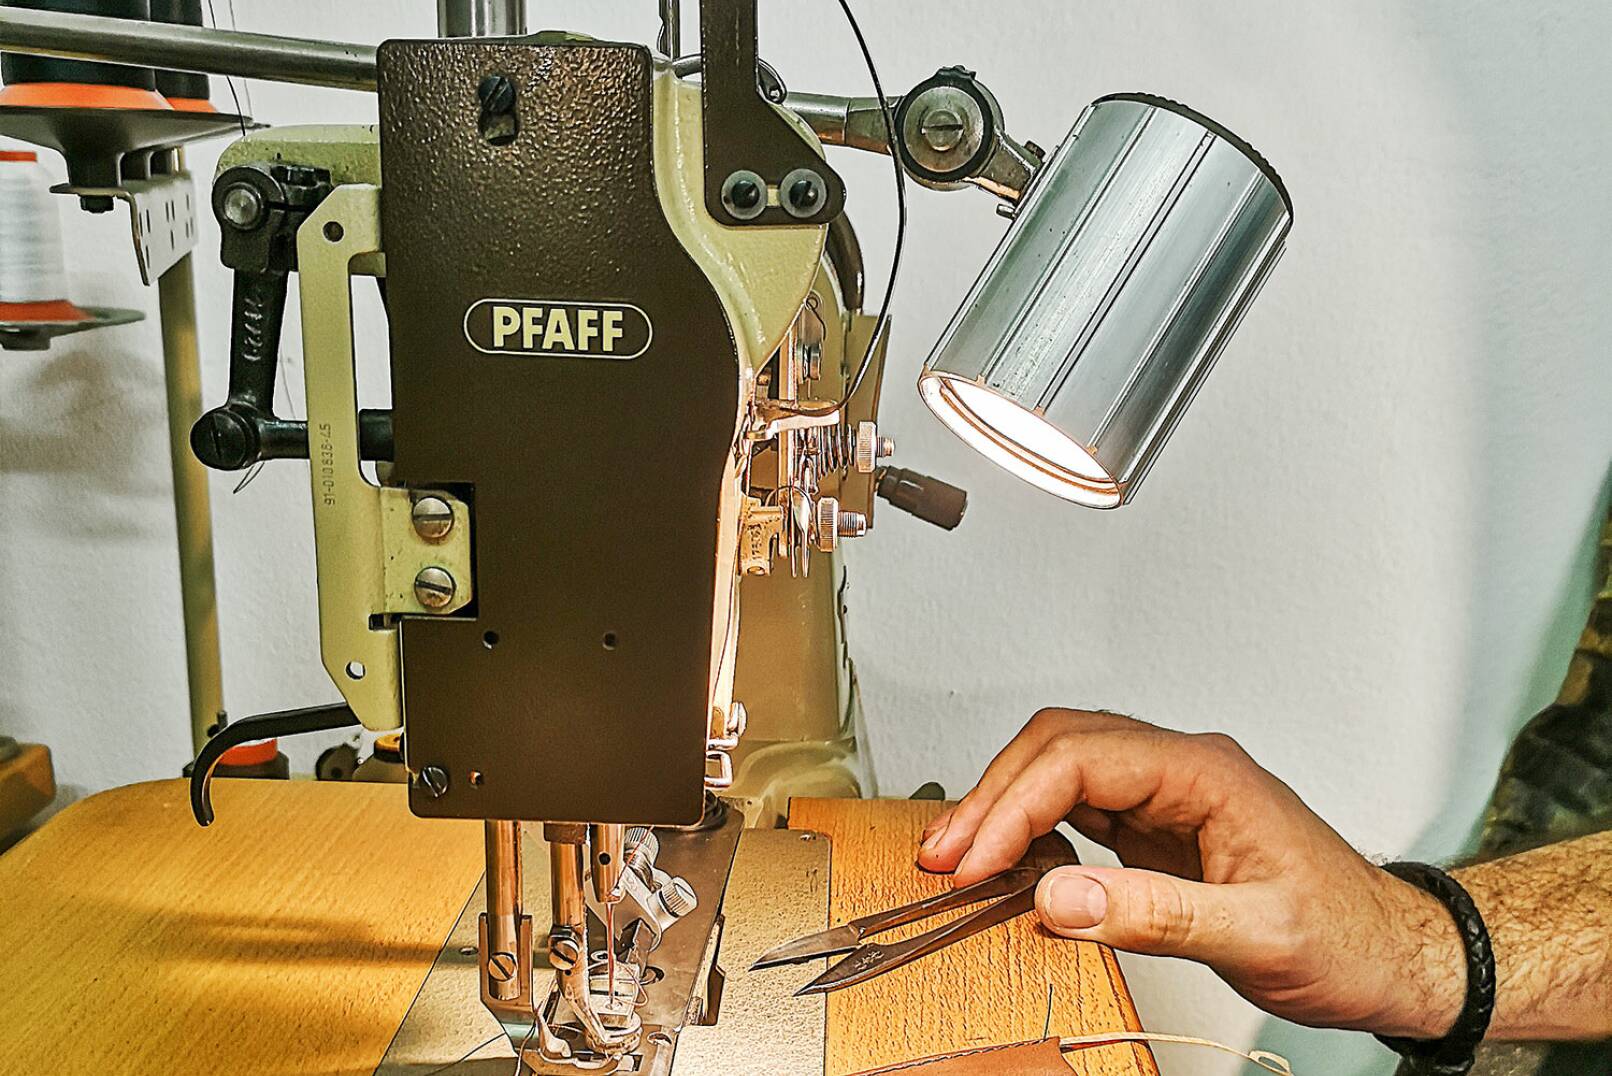 Eines der wichtigsten Arbeitsgeräte ist die Pfaff-Nähmaschine. - © Michaela Landbauer